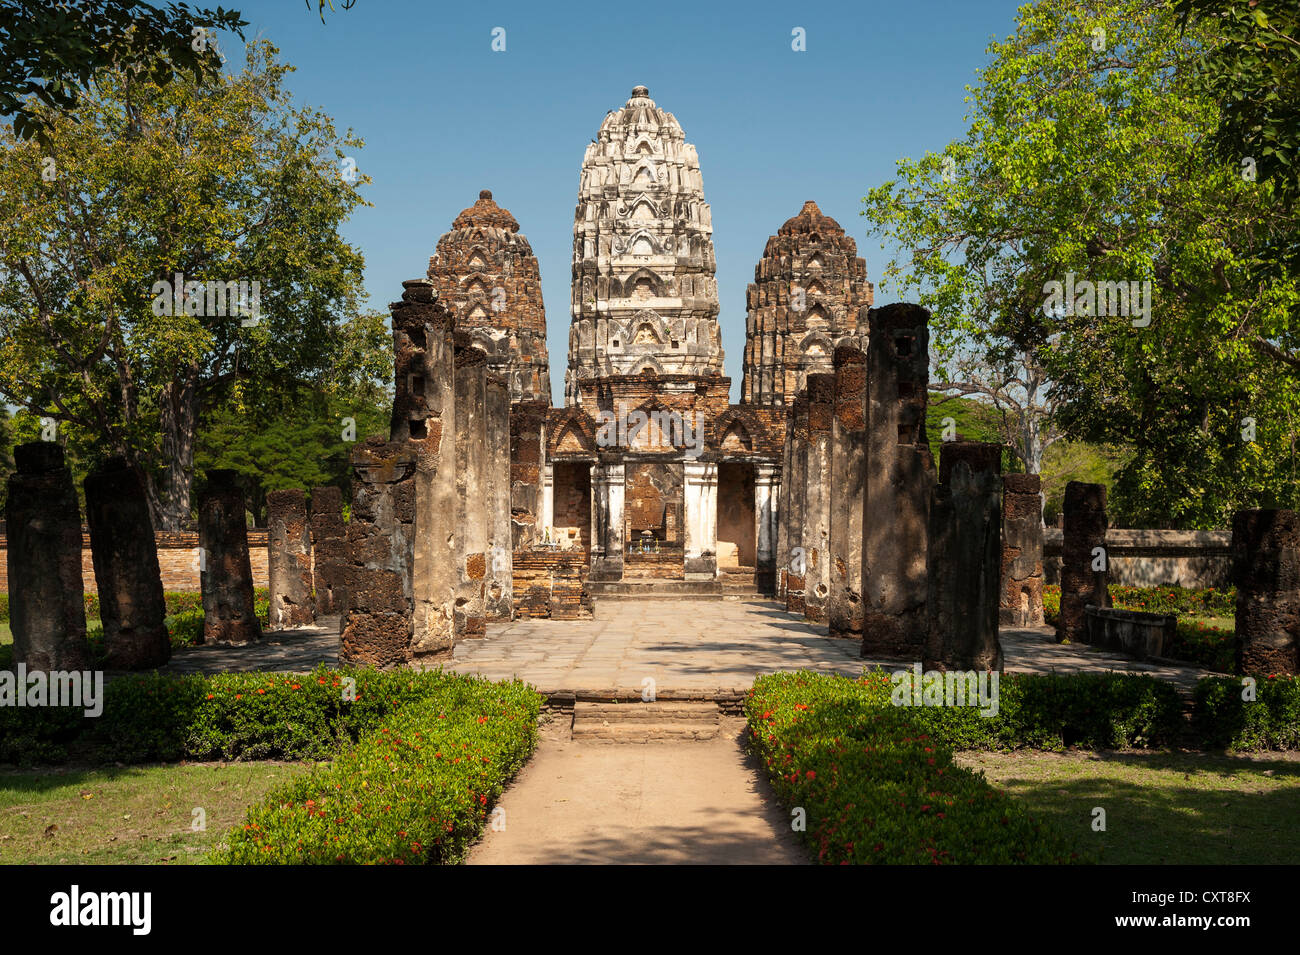 Wat Sri Sawai temple, Parc historique de Sukhothaï, Site du patrimoine mondial de l'UNESCO, dans le Nord de la Thaïlande, la Thaïlande, l'Asie Banque D'Images